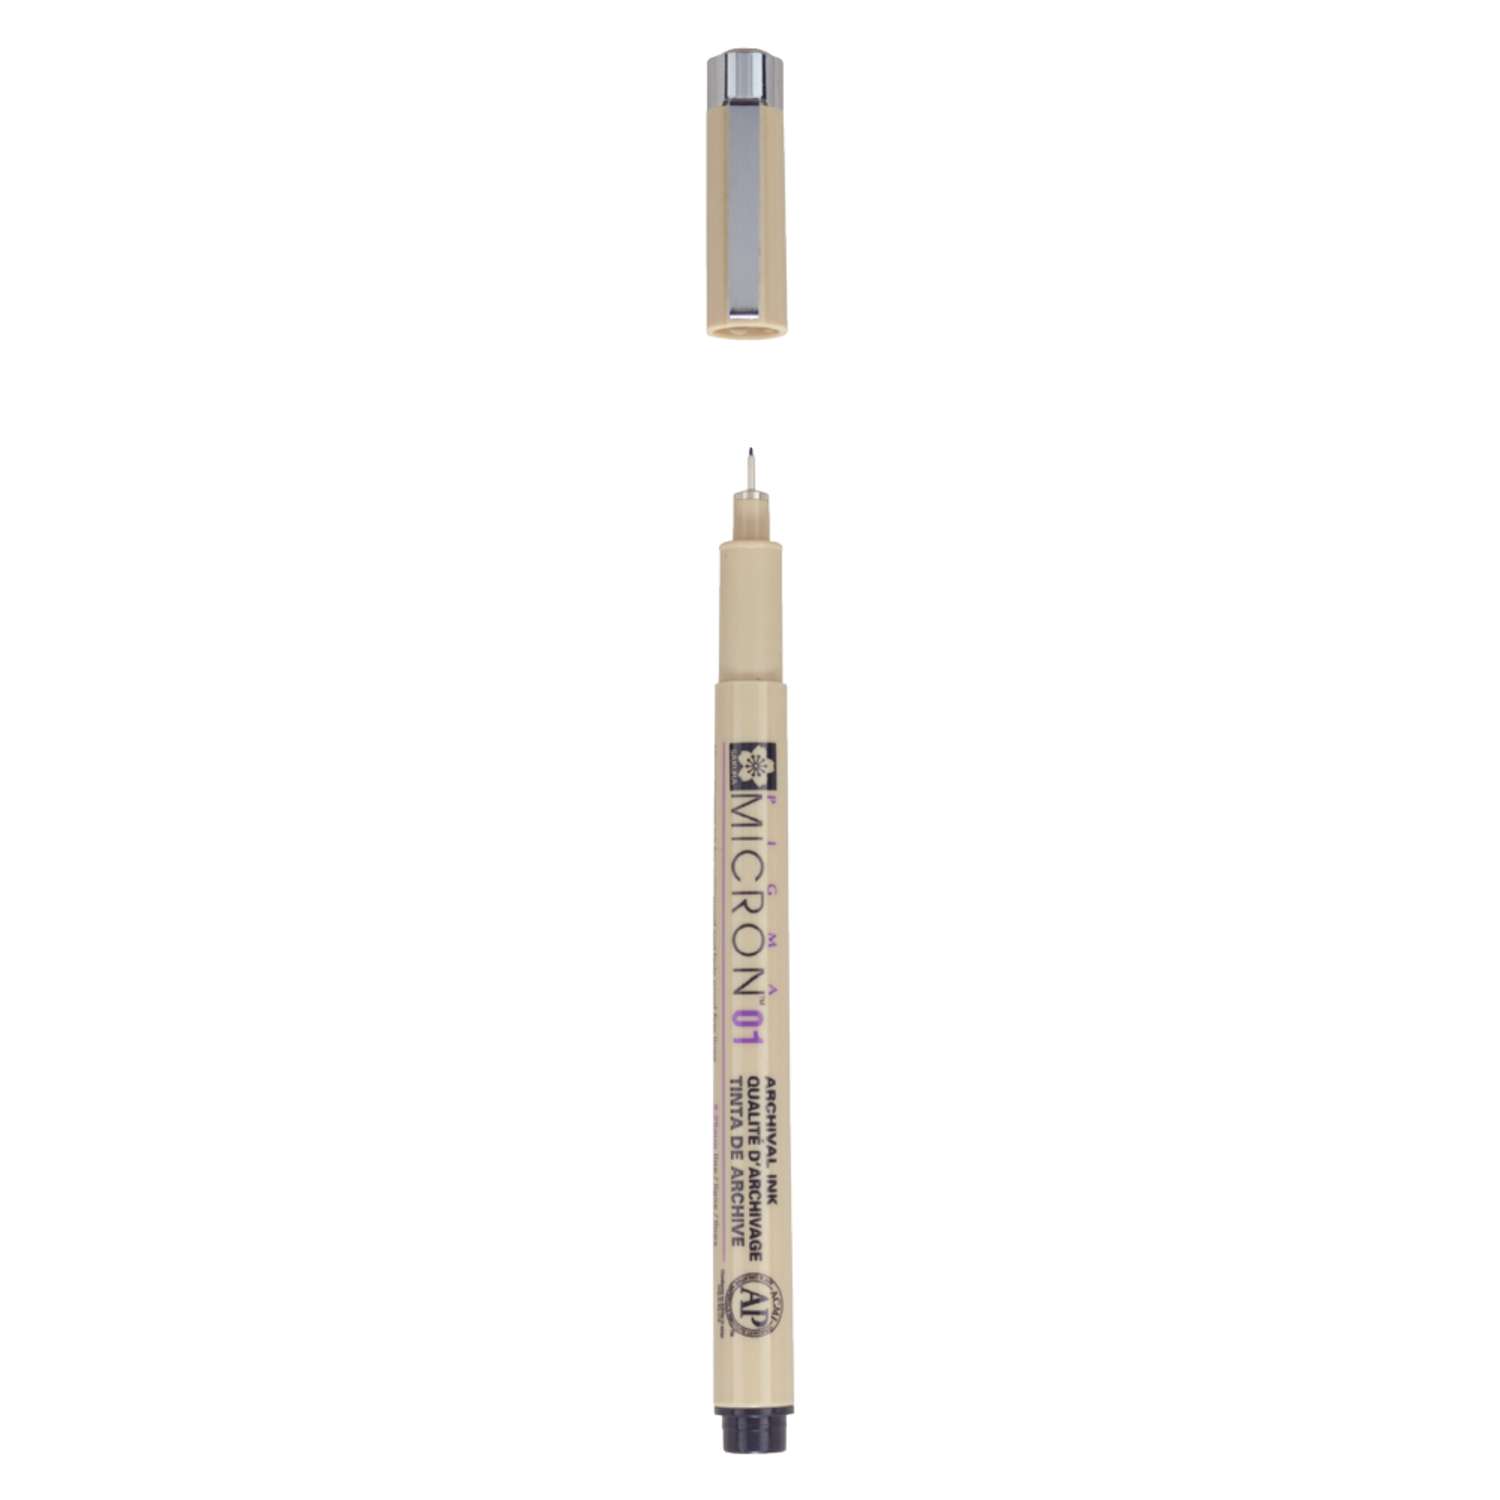 Ручка капиллярная Sakura Pigma Micron 01 цвет чернил: черный - фото 2